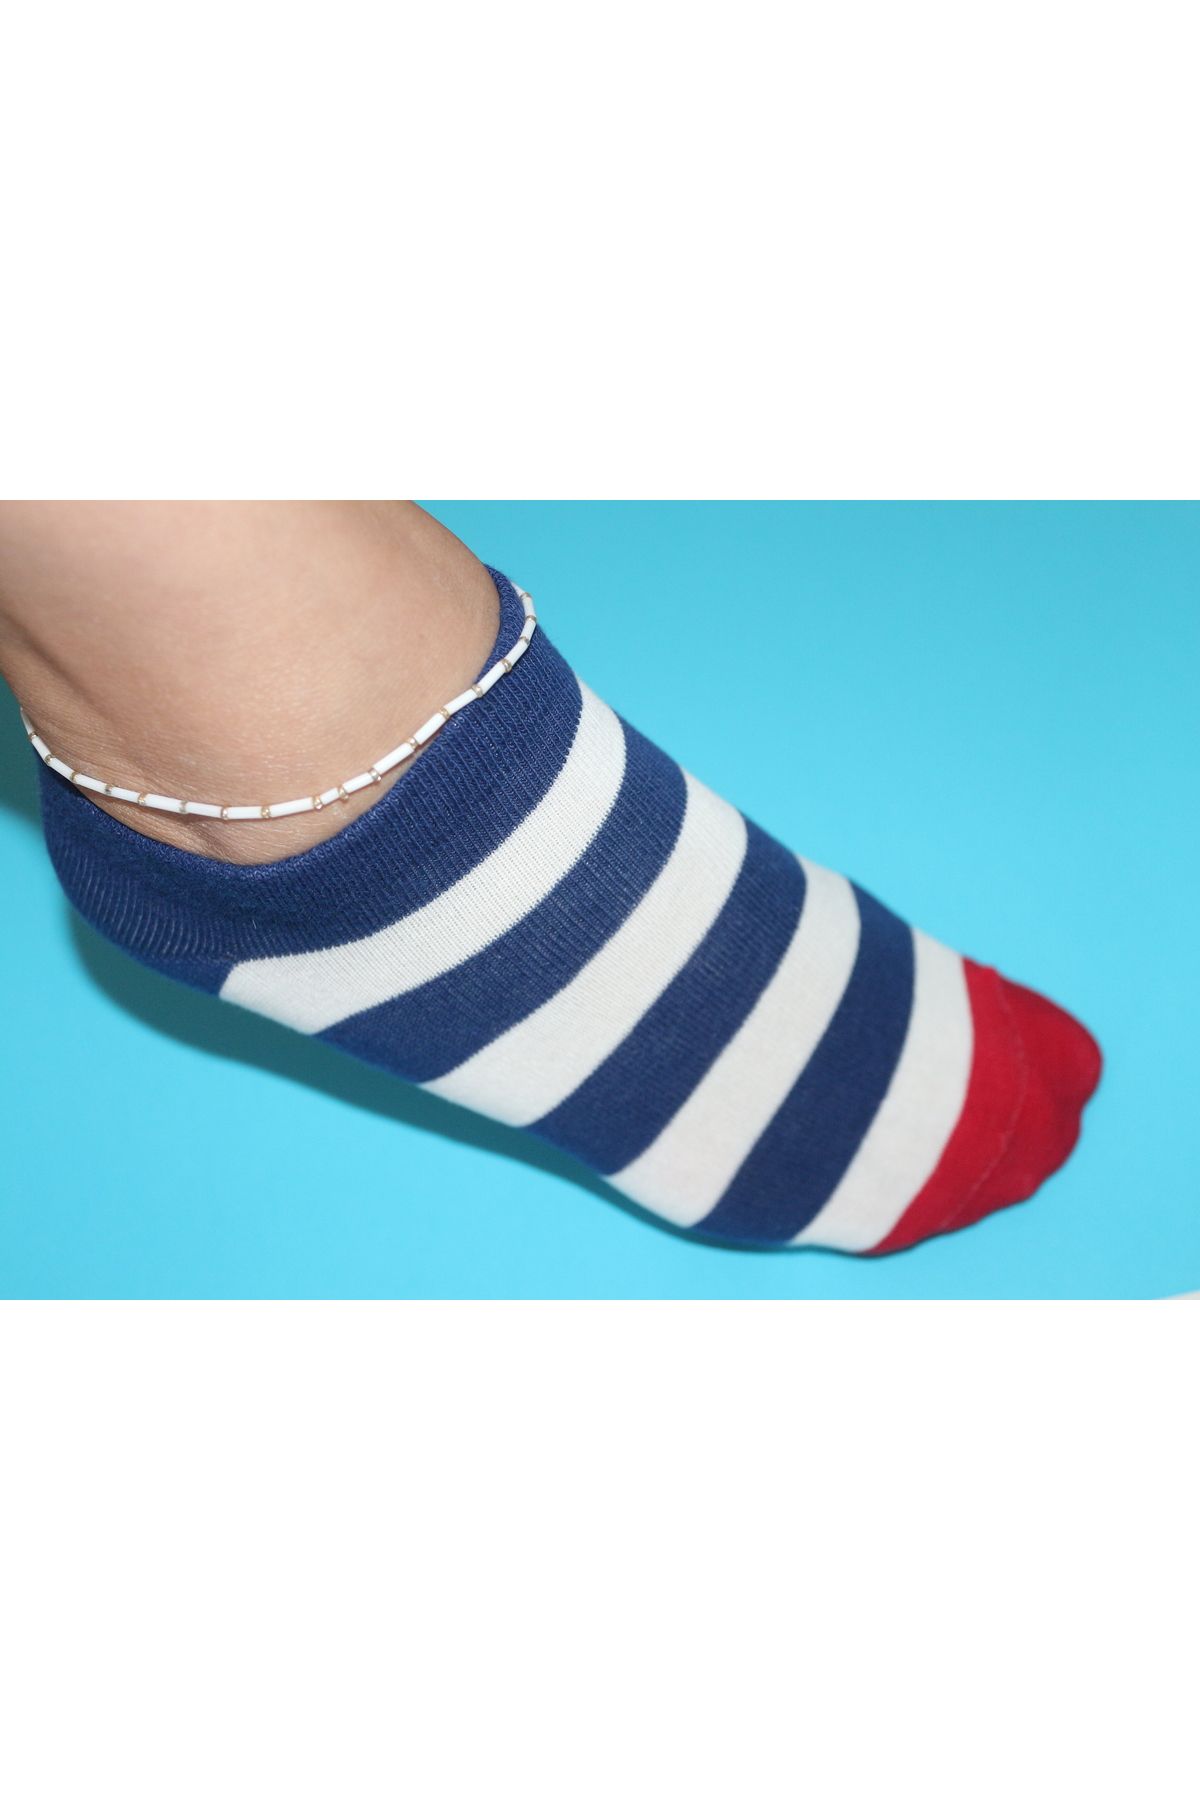 VAD 10 Lu Lacivert-beyaz Çizgili Dikişsiz Baklava Desenli Patik Çorap